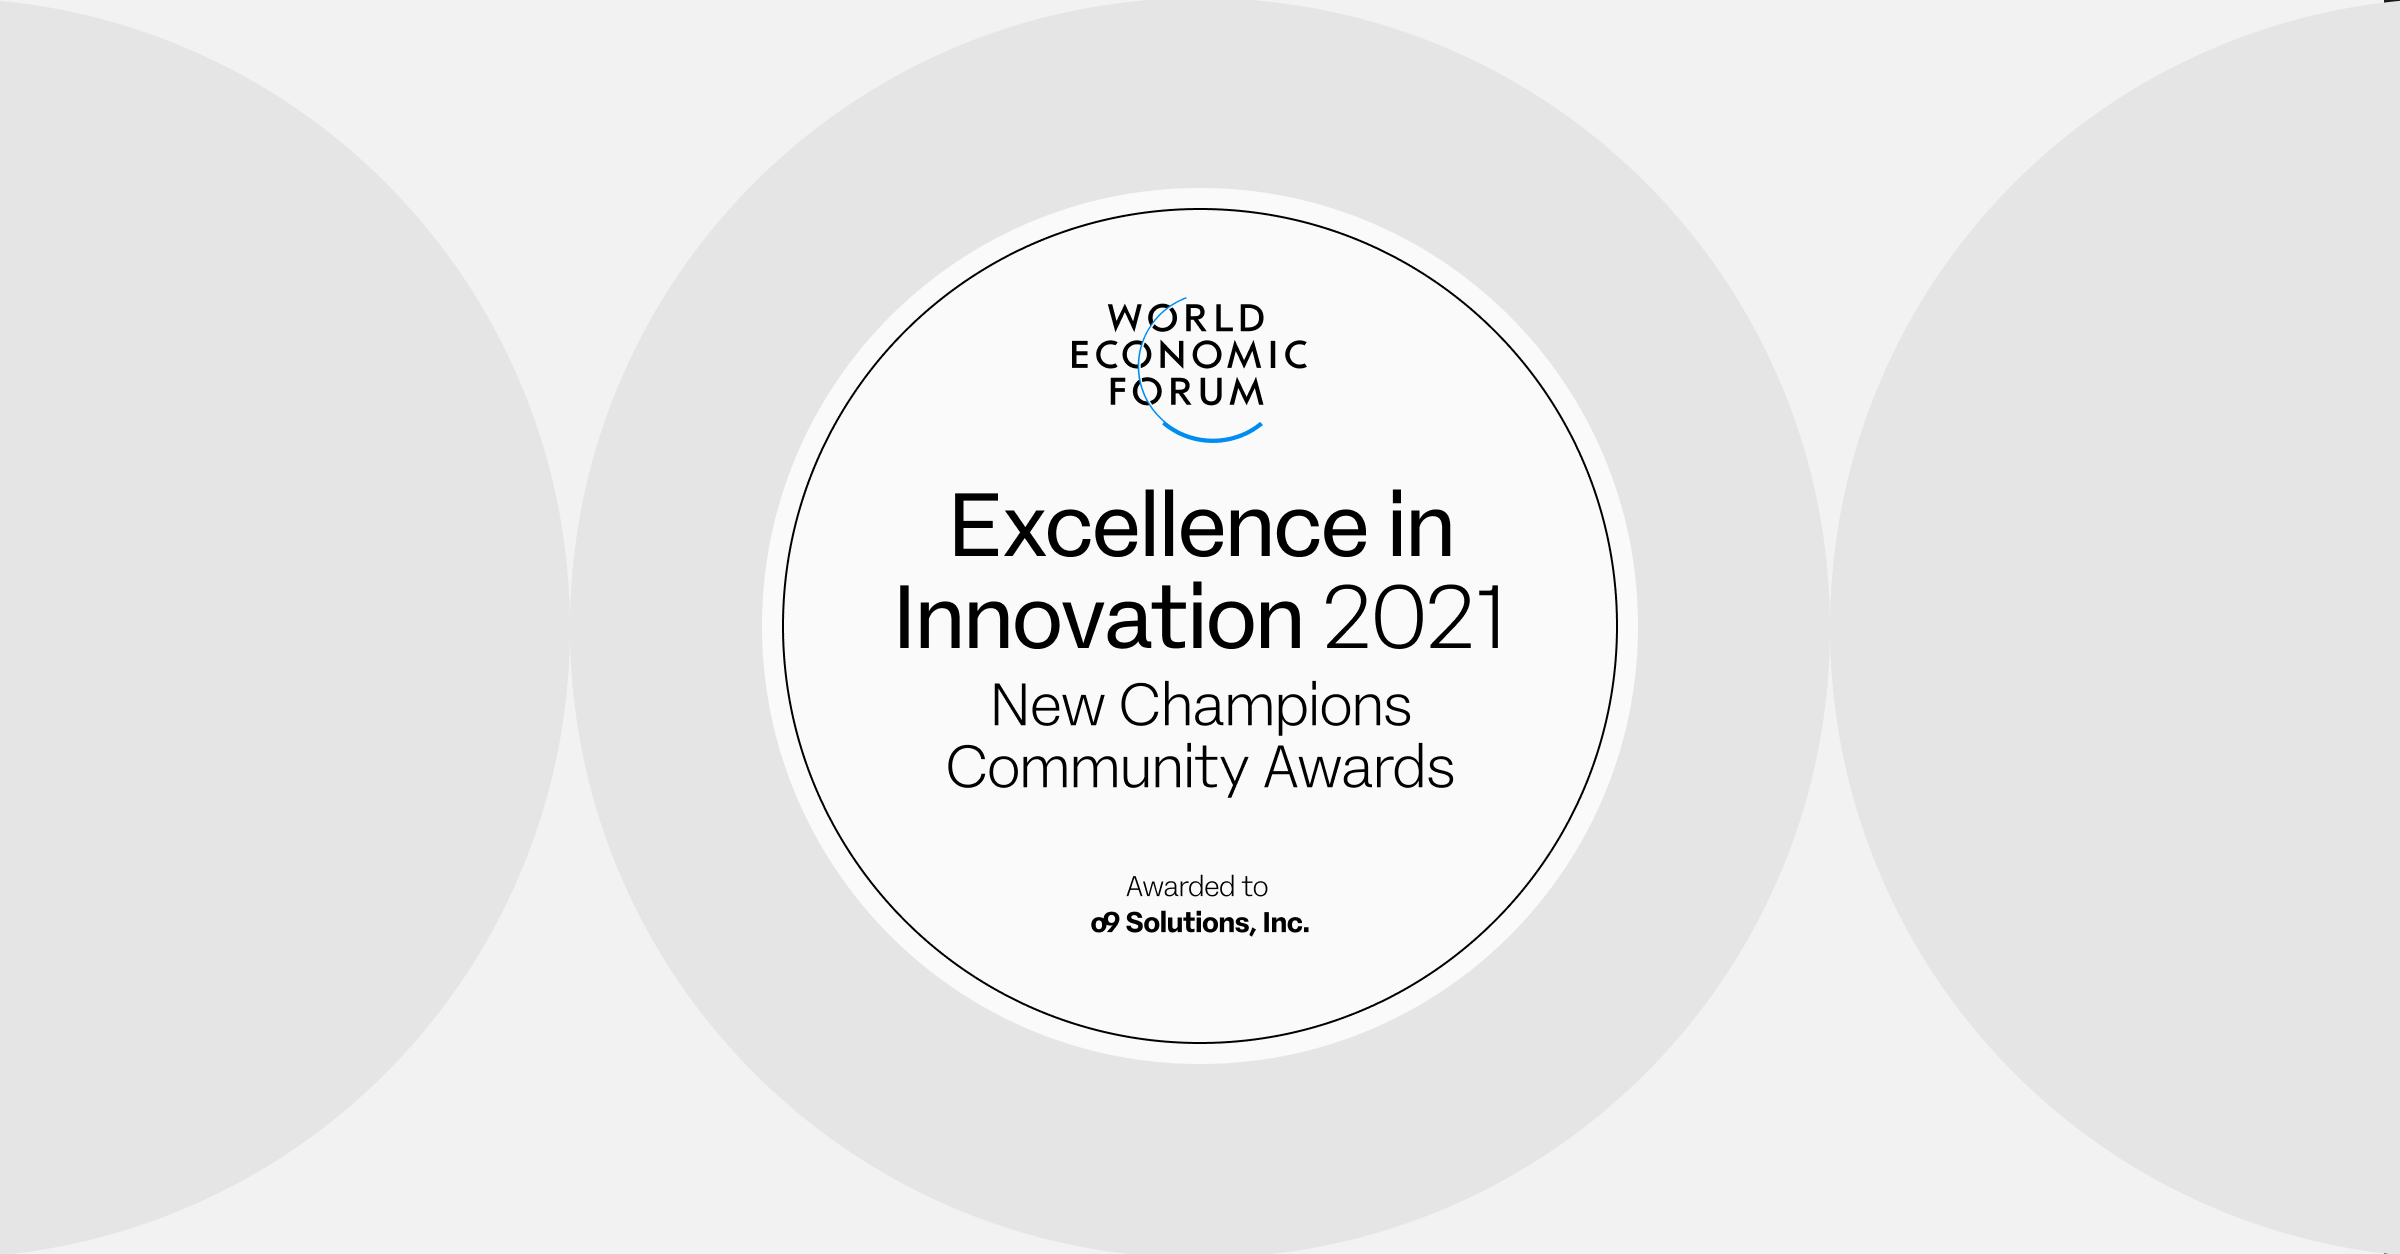 o9ソリューションズ、イノベーションにおける卓越性が認められ、世界経済フォーラムの2021年 ニュー・チャンピオンズ・アワードを受賞